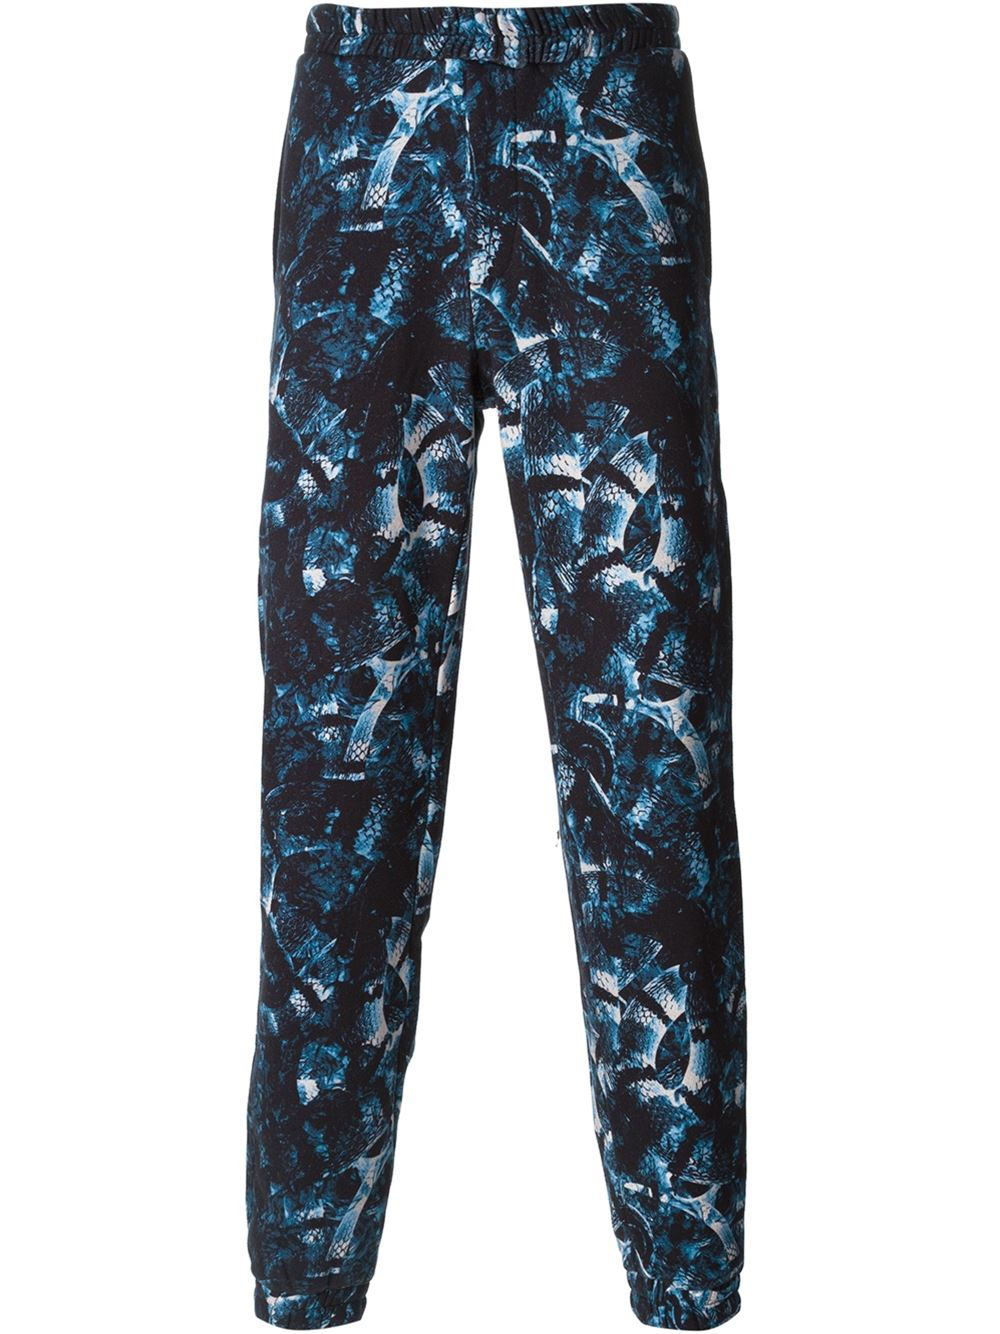 Lyst - Marcelo Burlon Snake Print Track Pants in Blue for Men